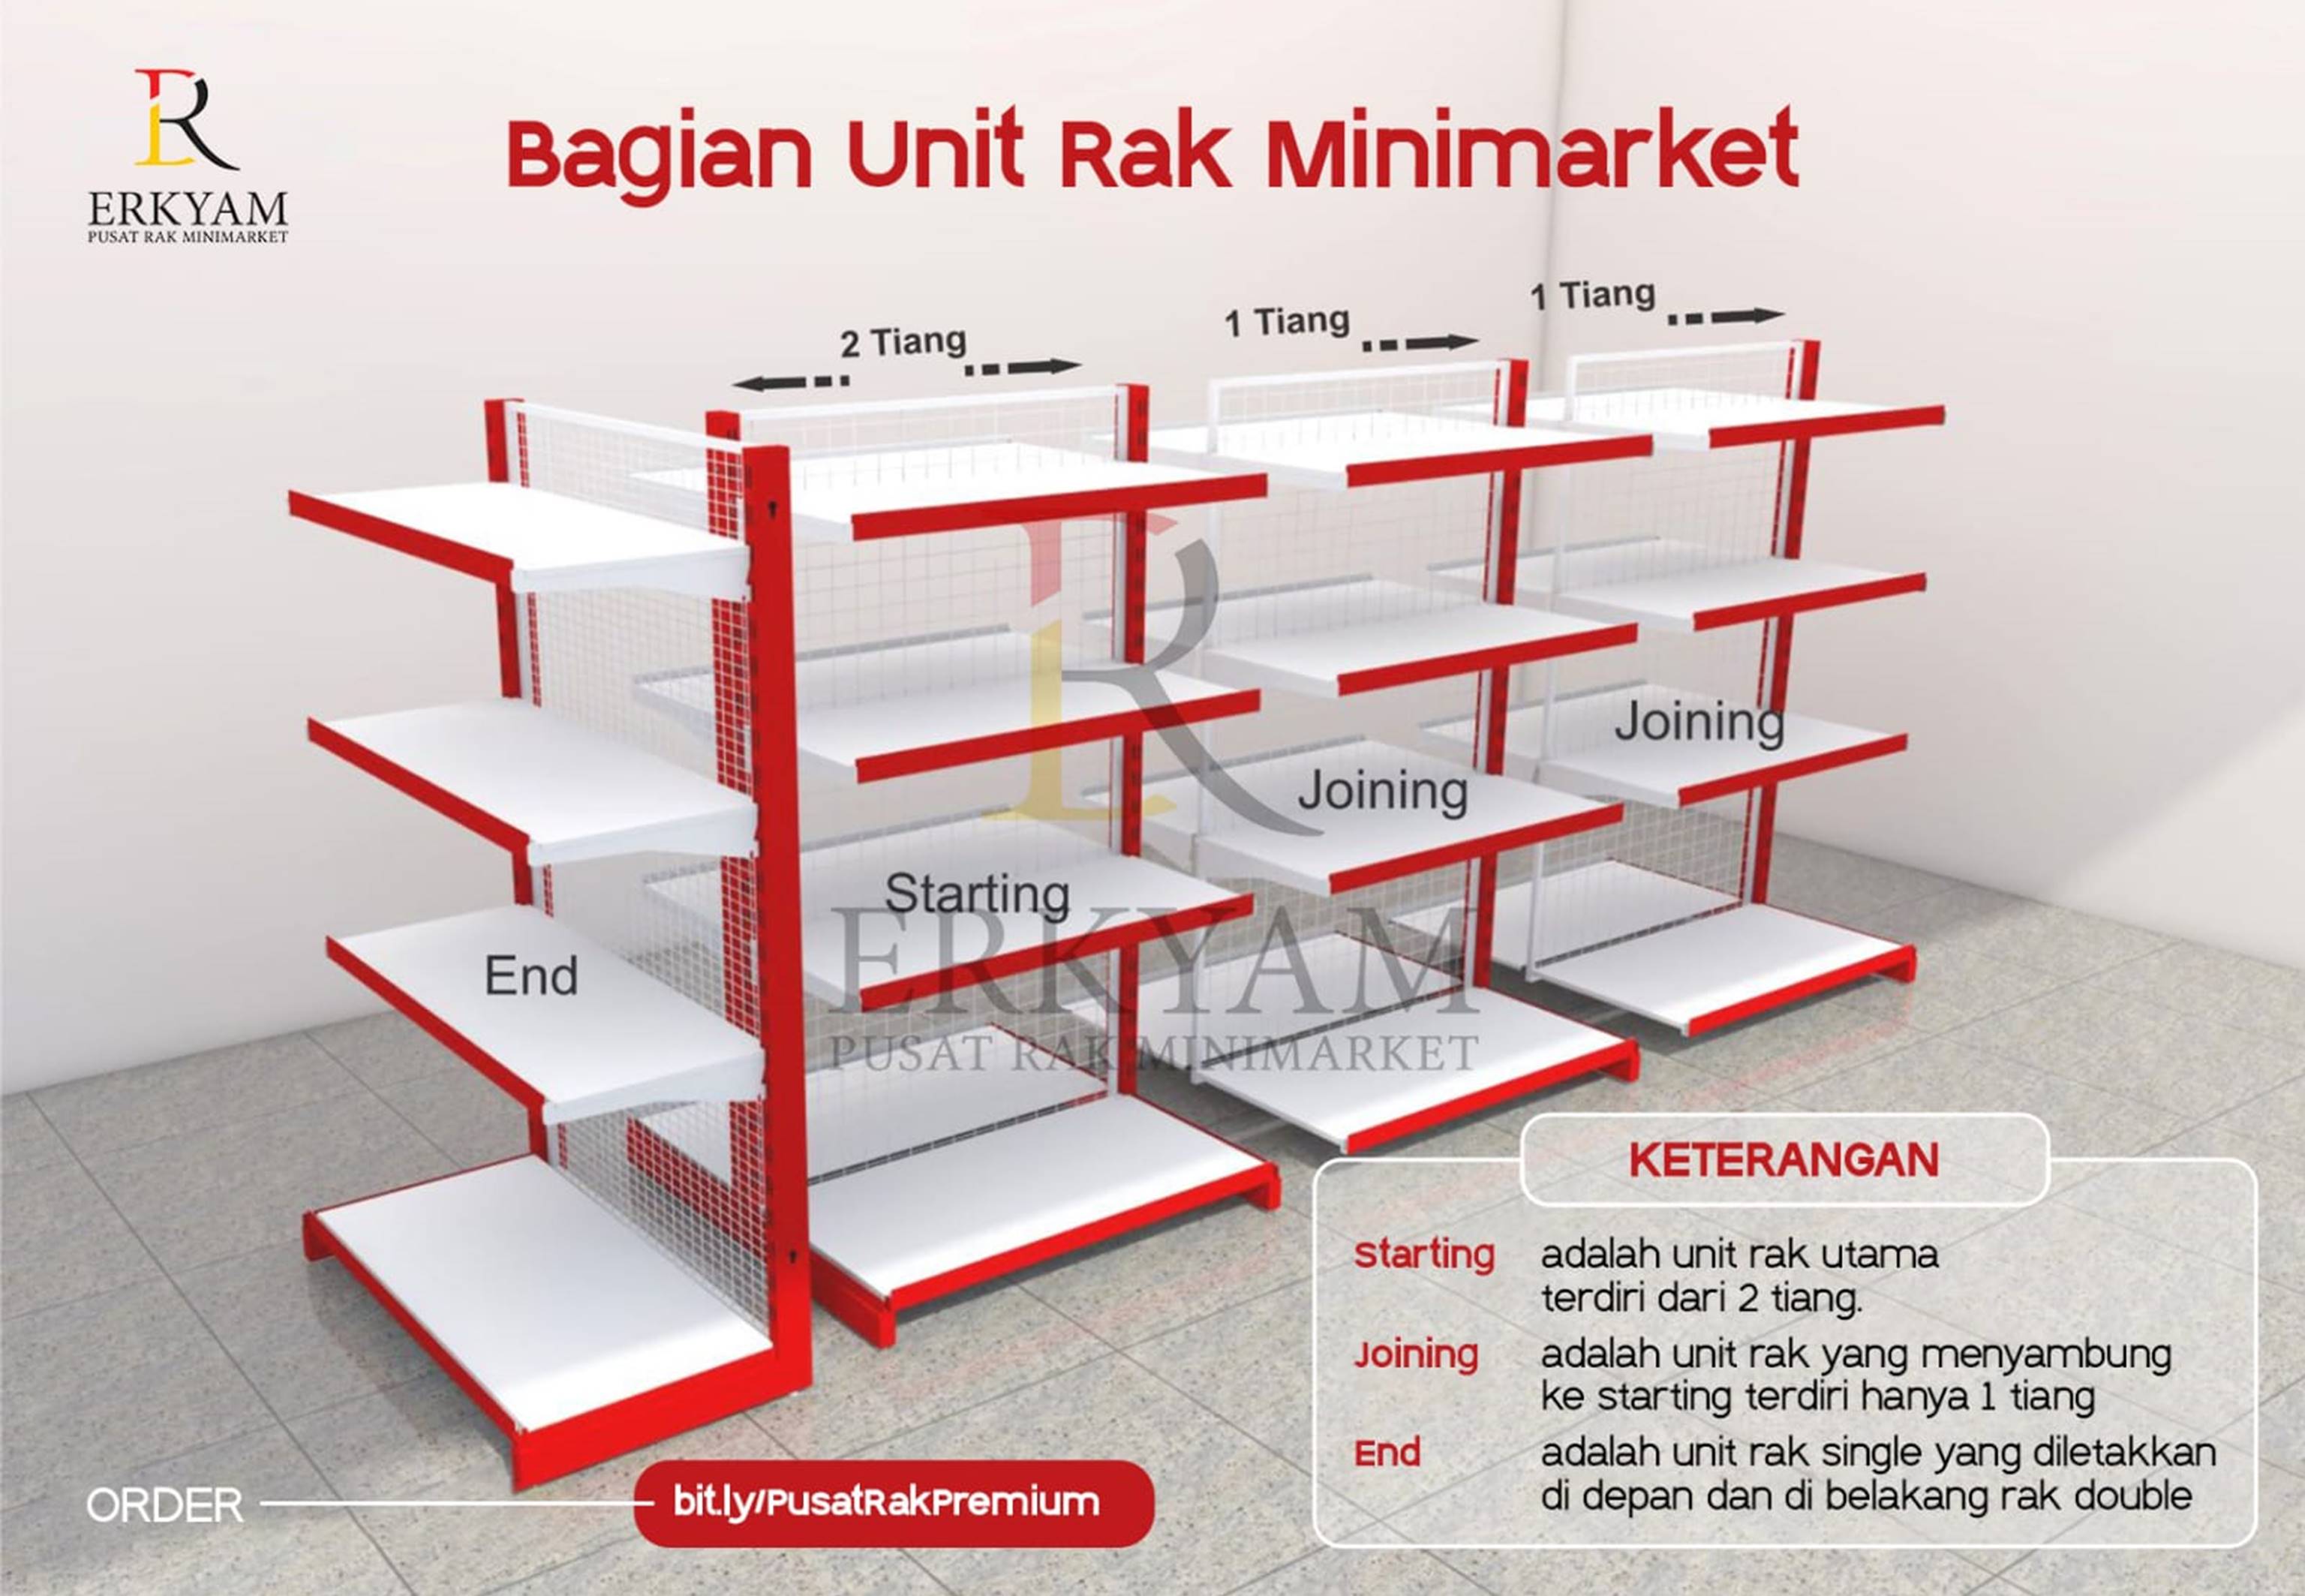 ERKYAM Distributor Rak Toko Retail wilayah Balikpapan Kalimantan Timur